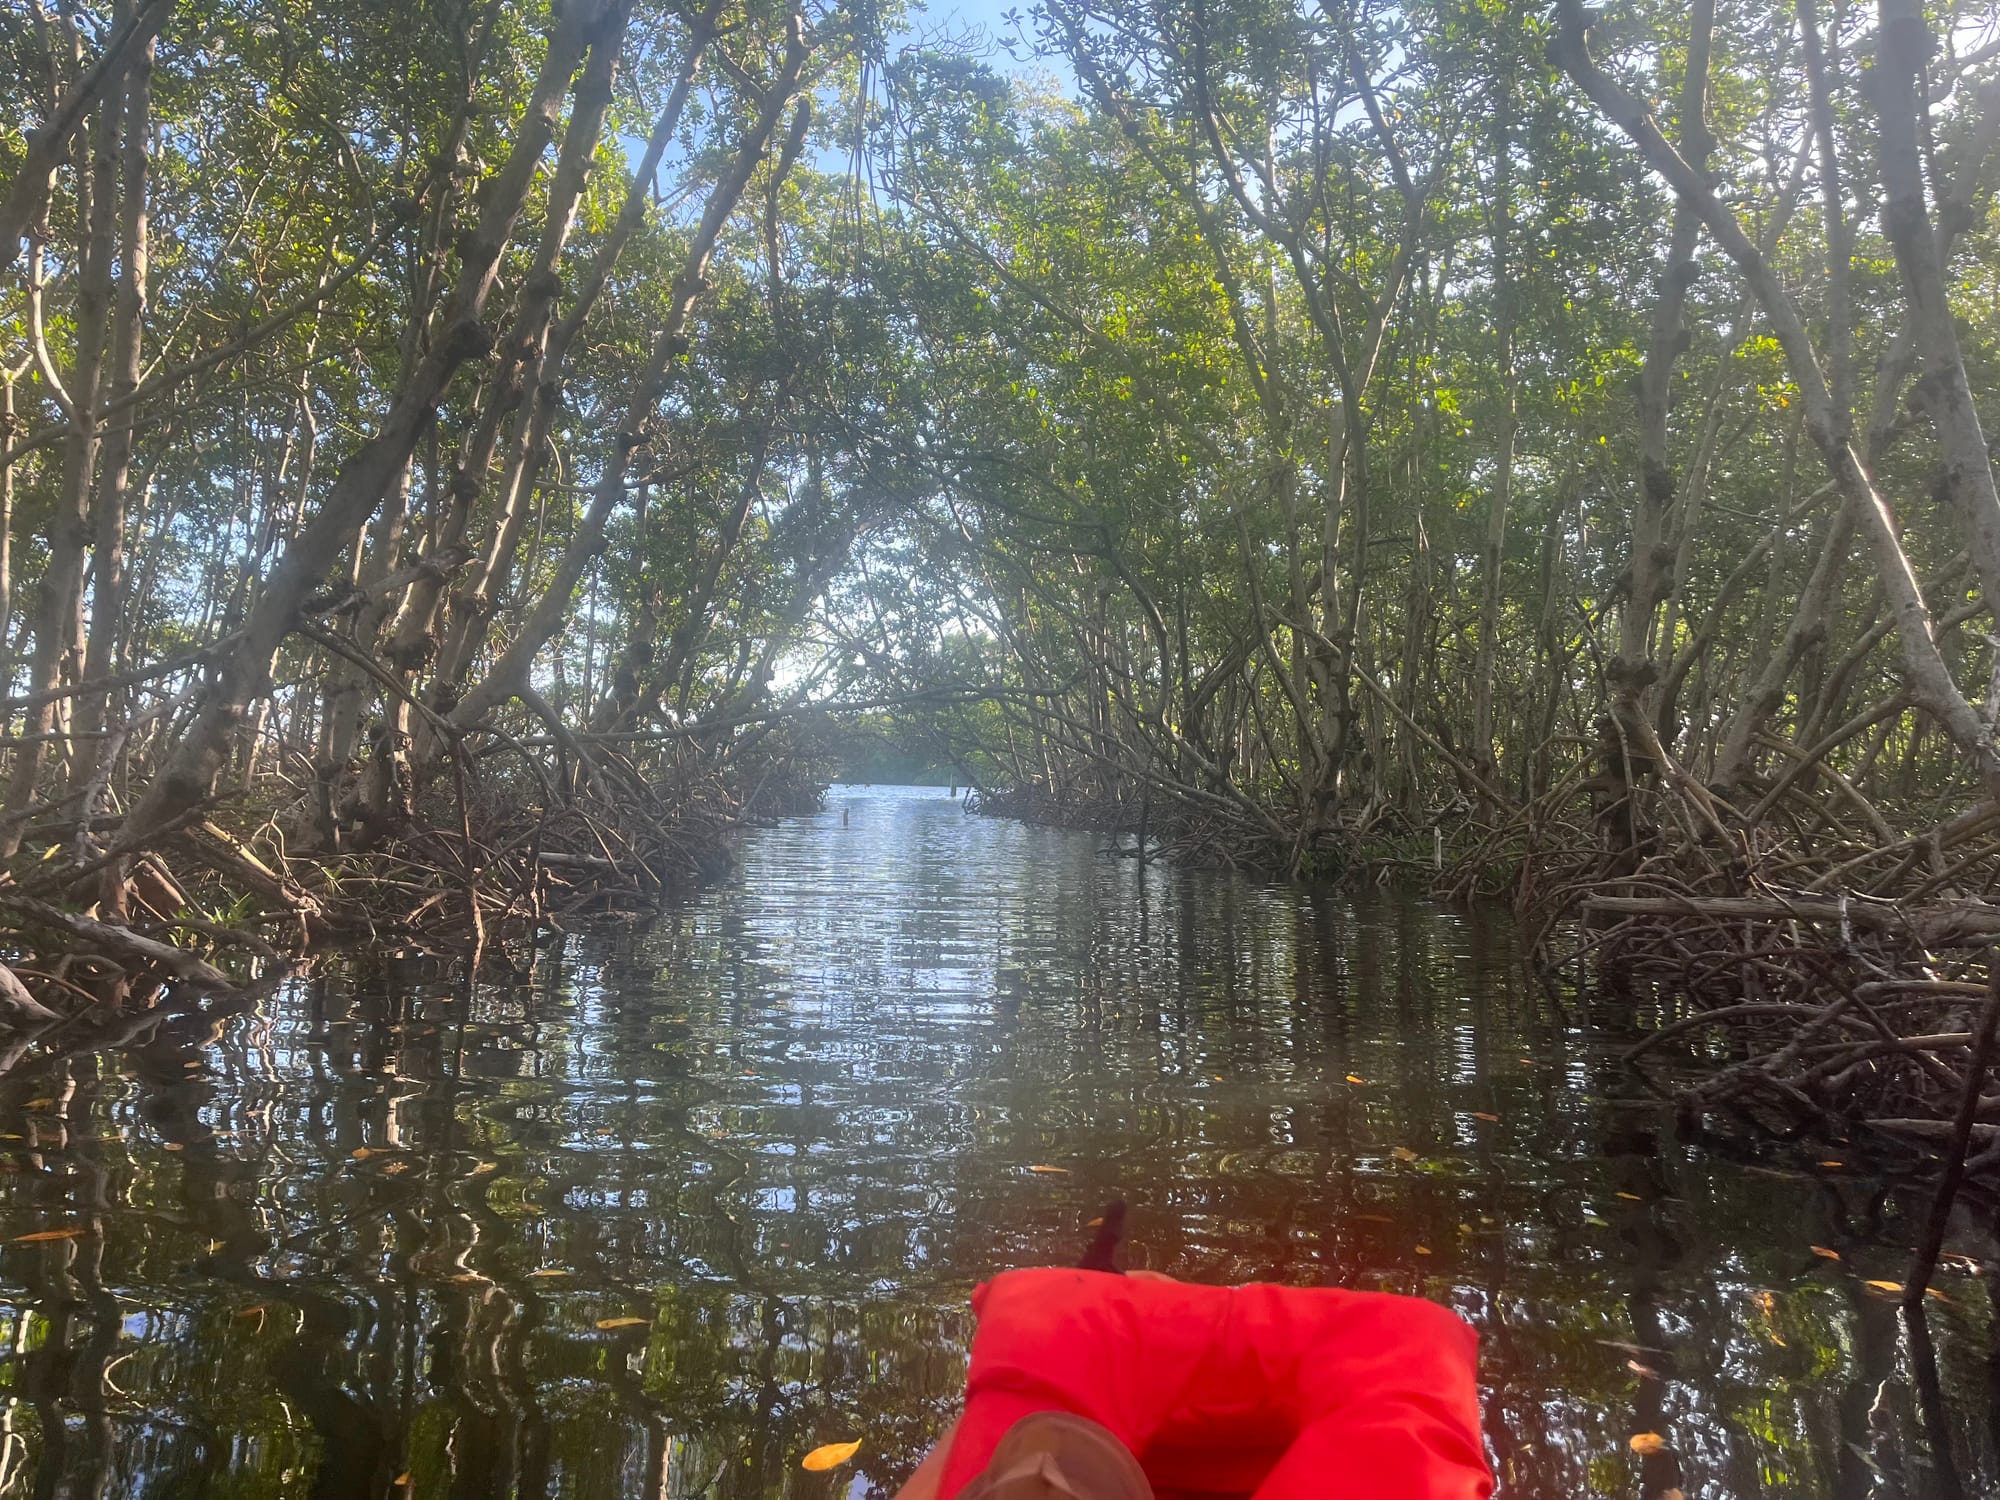 Kayaking through a mangrove in Florida